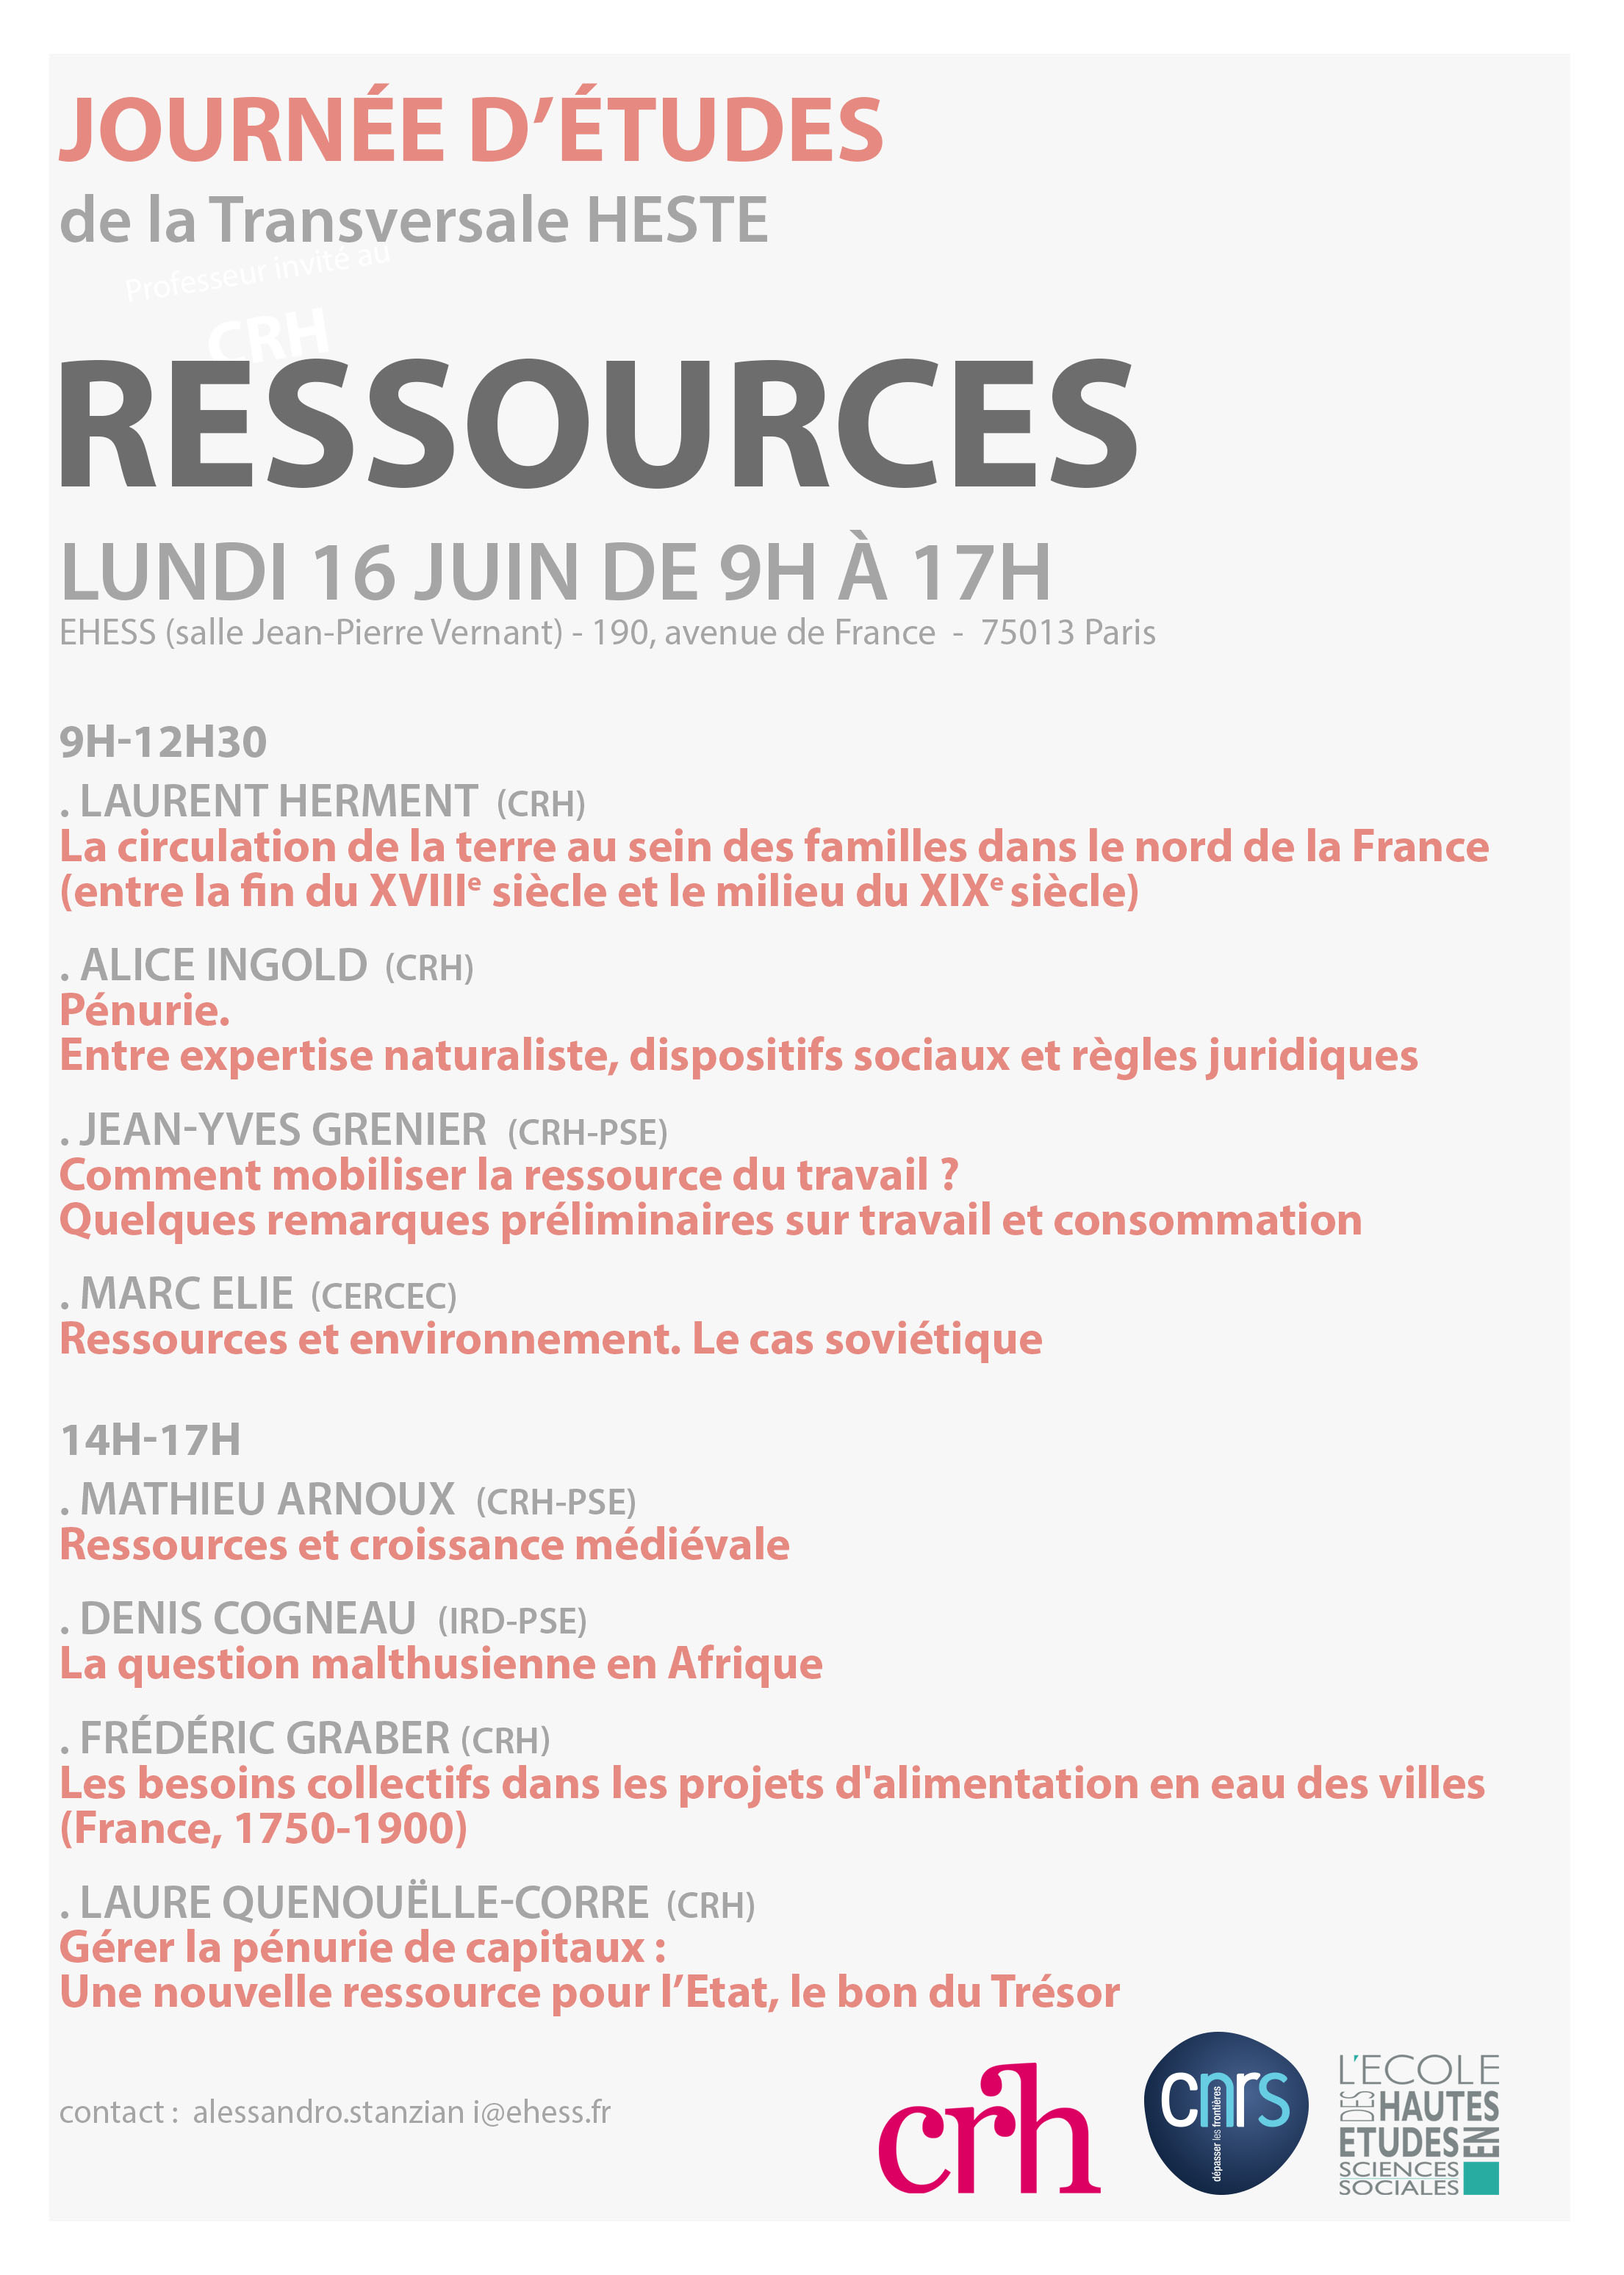 Ressources. Le lundi 16 juin. Journée d'études de la transversale HESTE